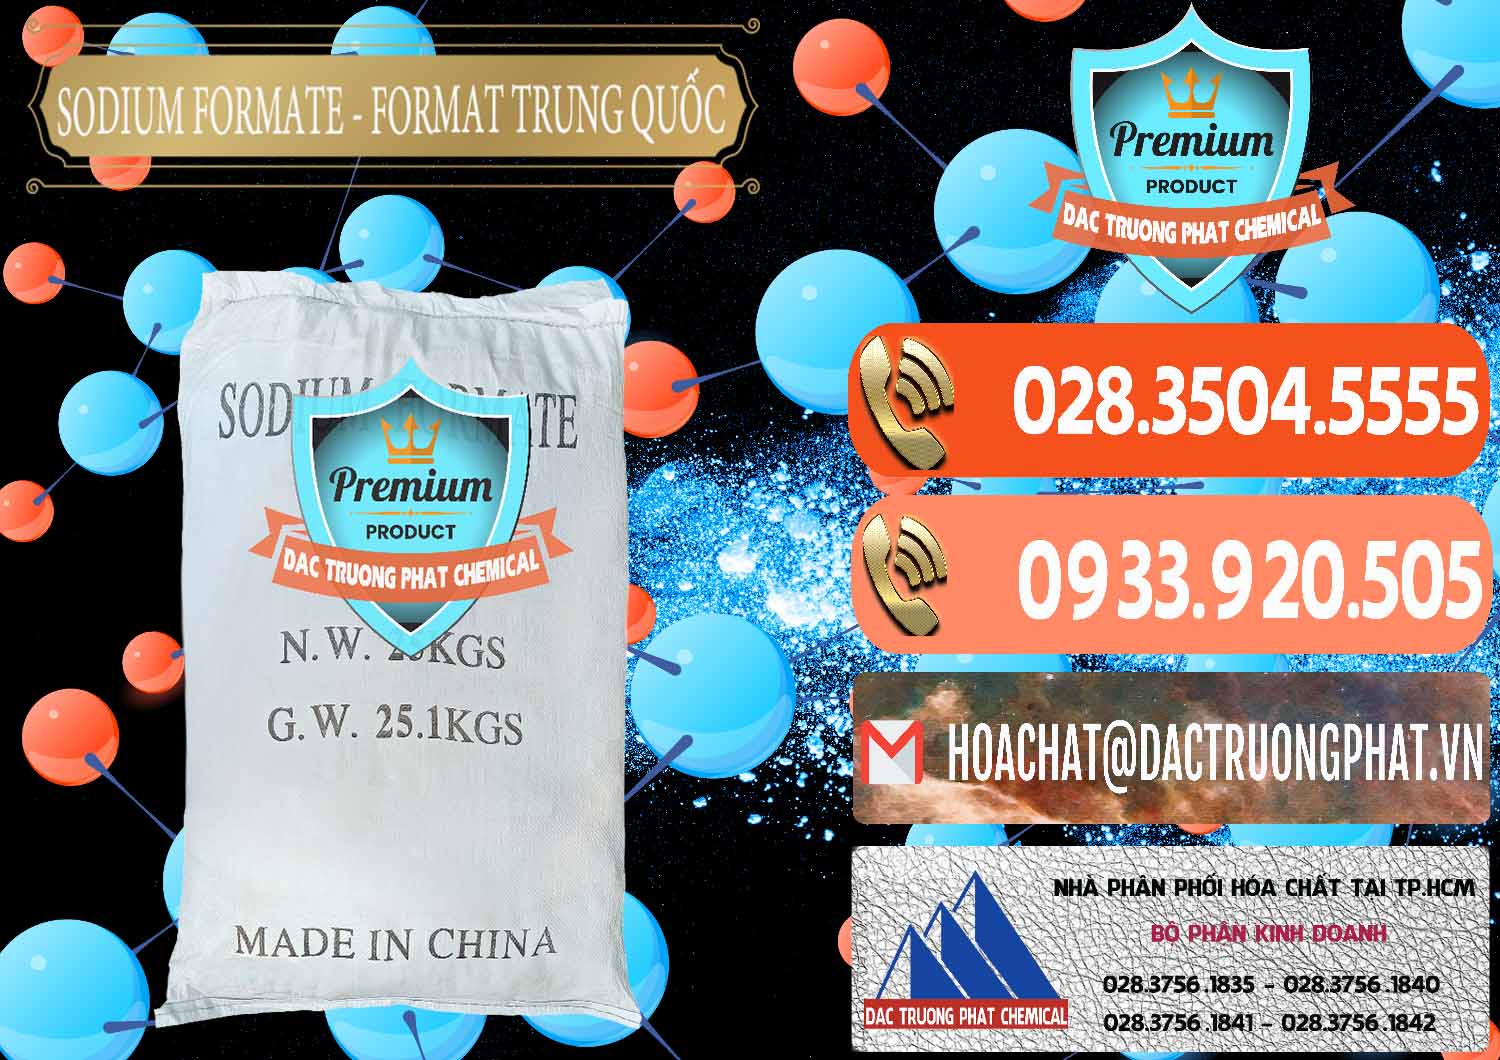 Nơi chuyên bán ( cung ứng ) Sodium Formate - Natri Format Trung Quốc China - 0142 - Cty kinh doanh - phân phối hóa chất tại TP.HCM - hoachatmientay.com